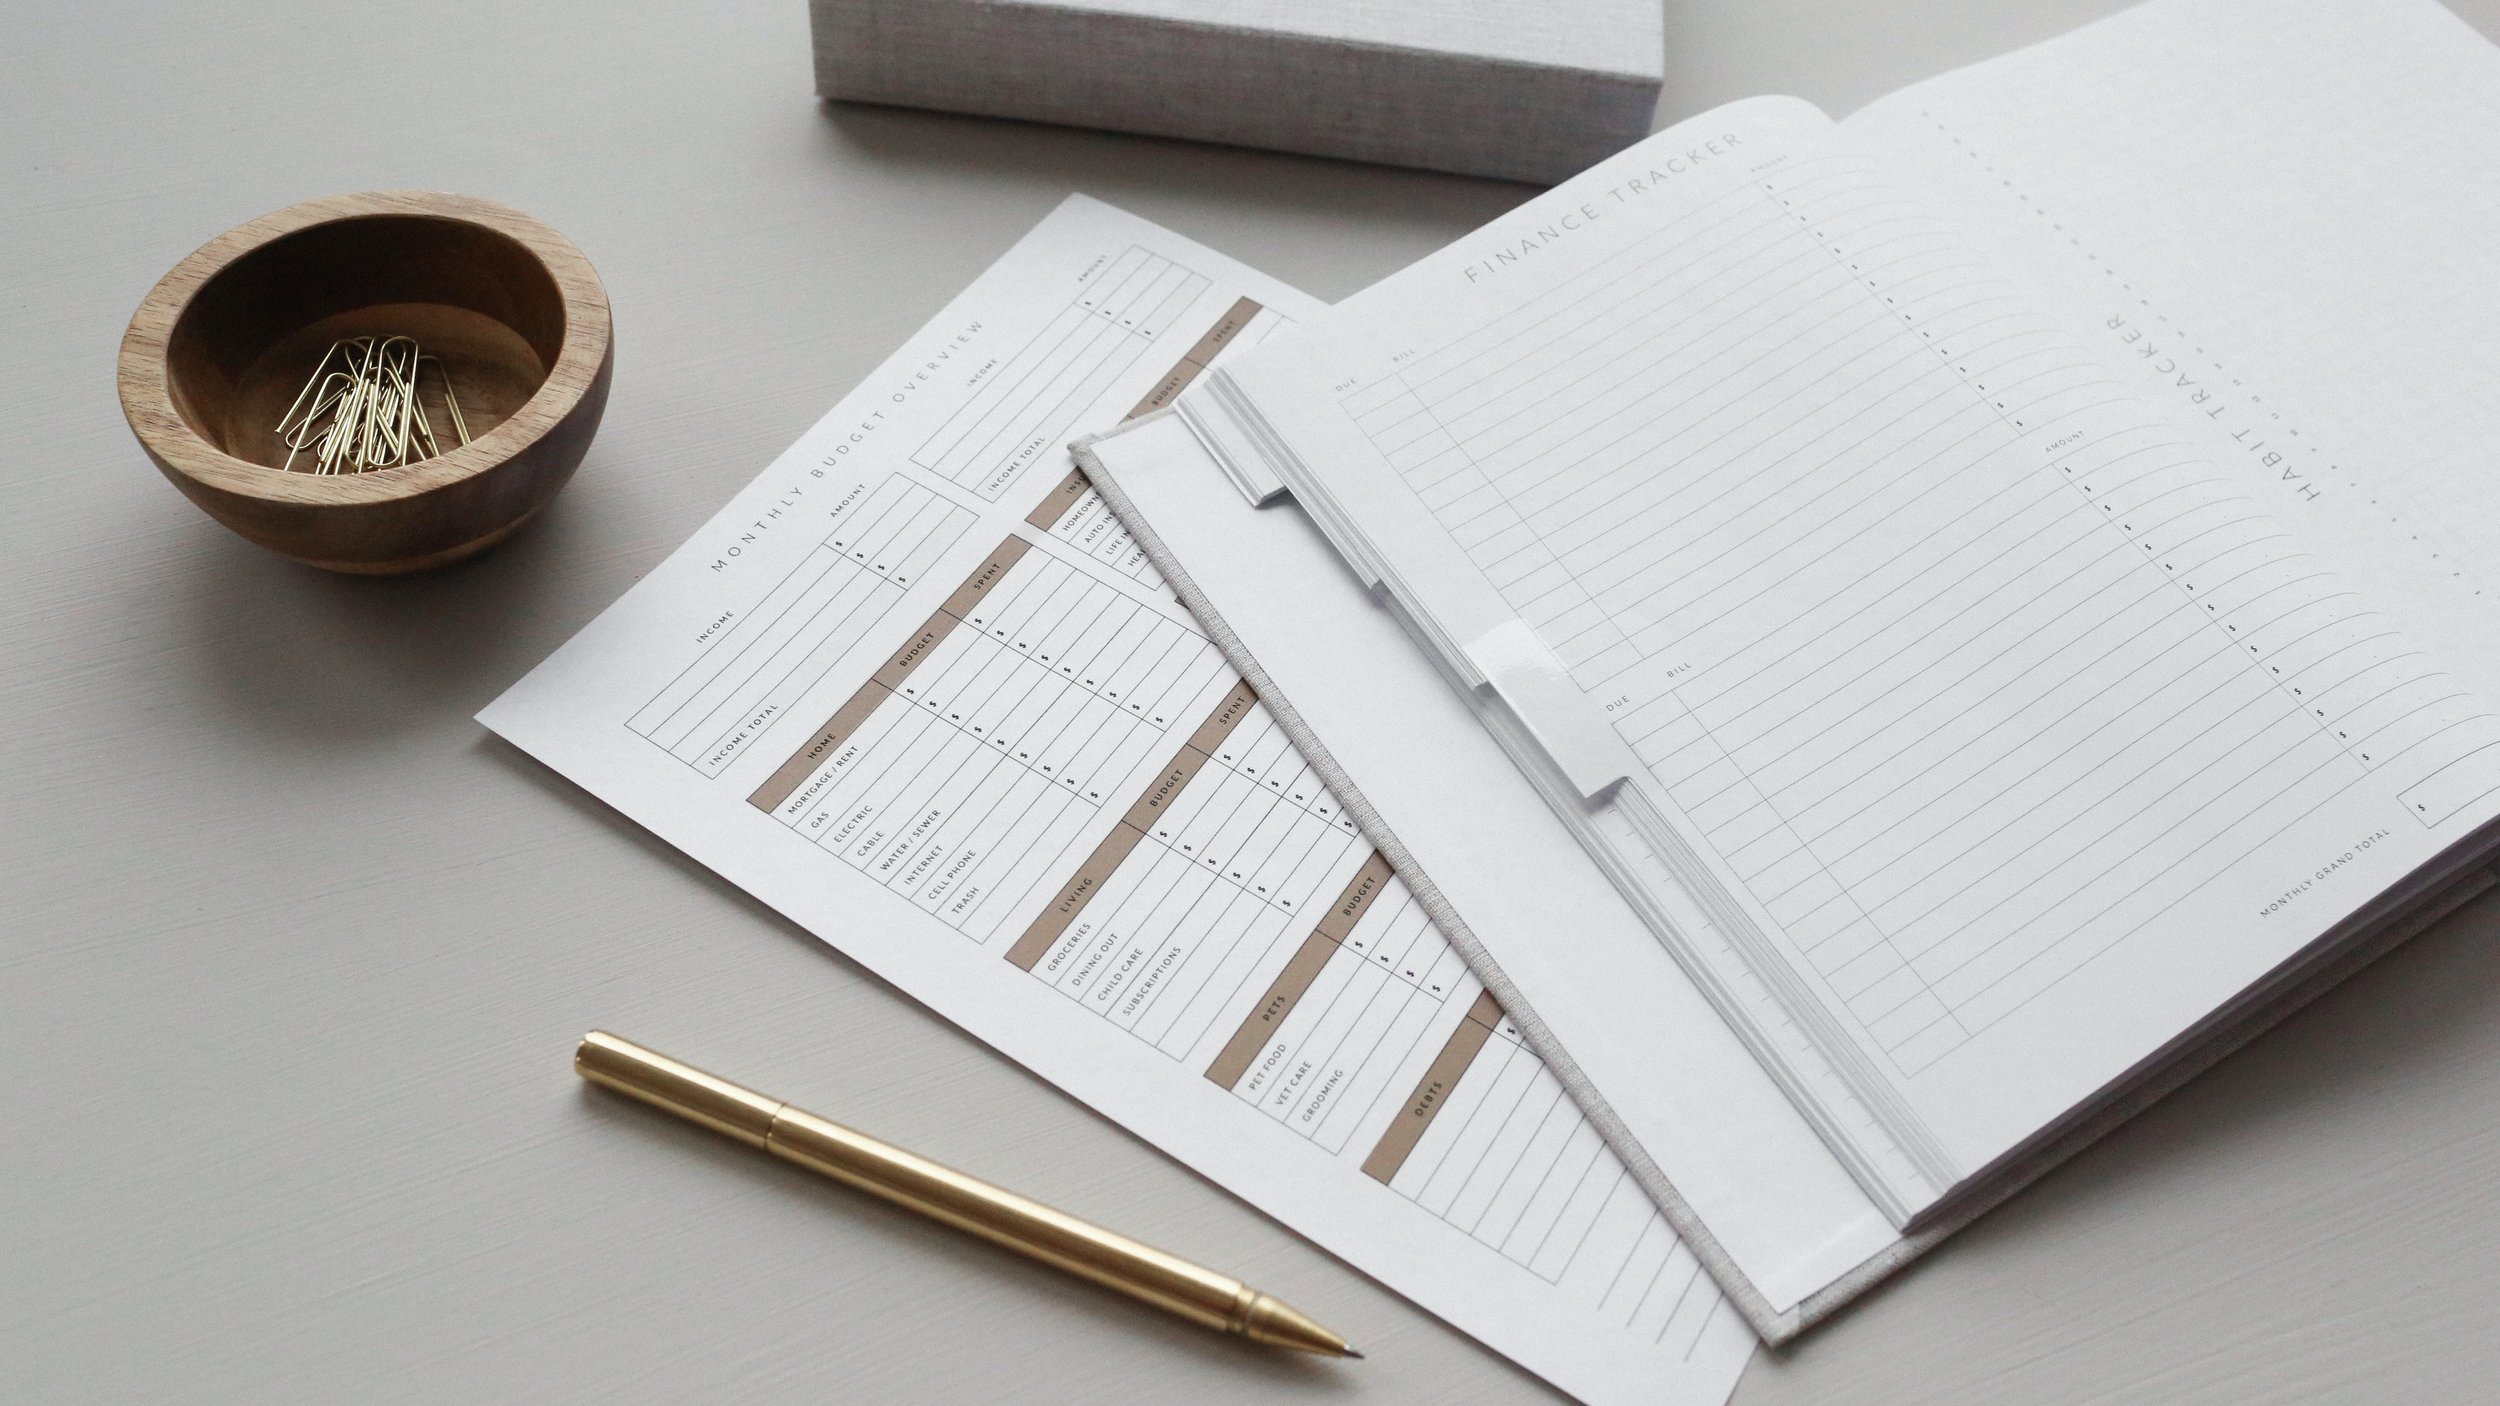 Pen, paper clips, jotter, and balance sheet